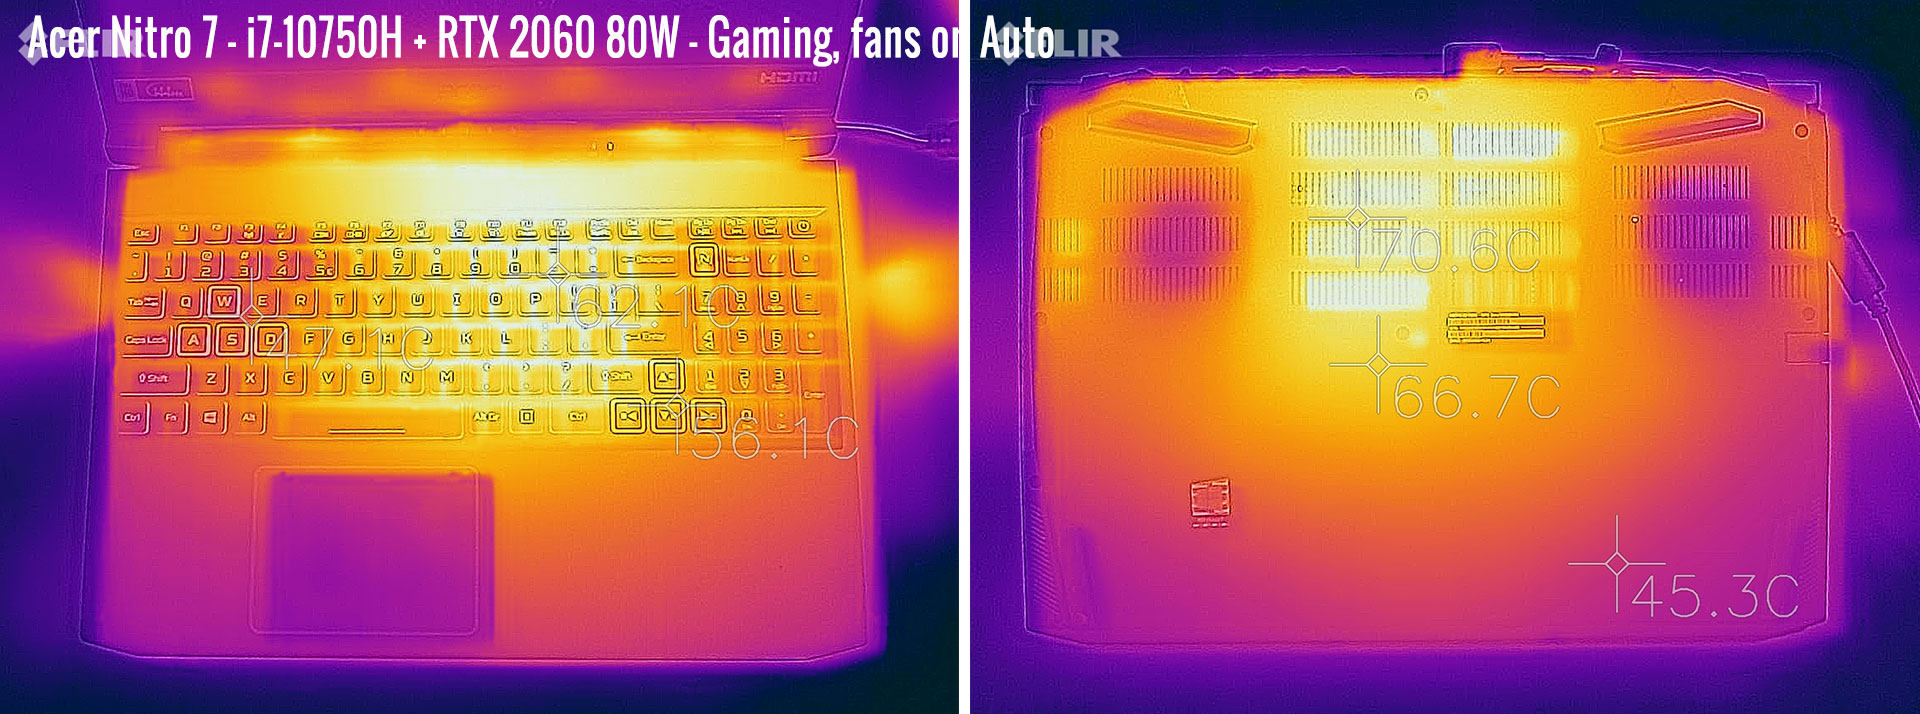 temperatures nitro7 gaming auto